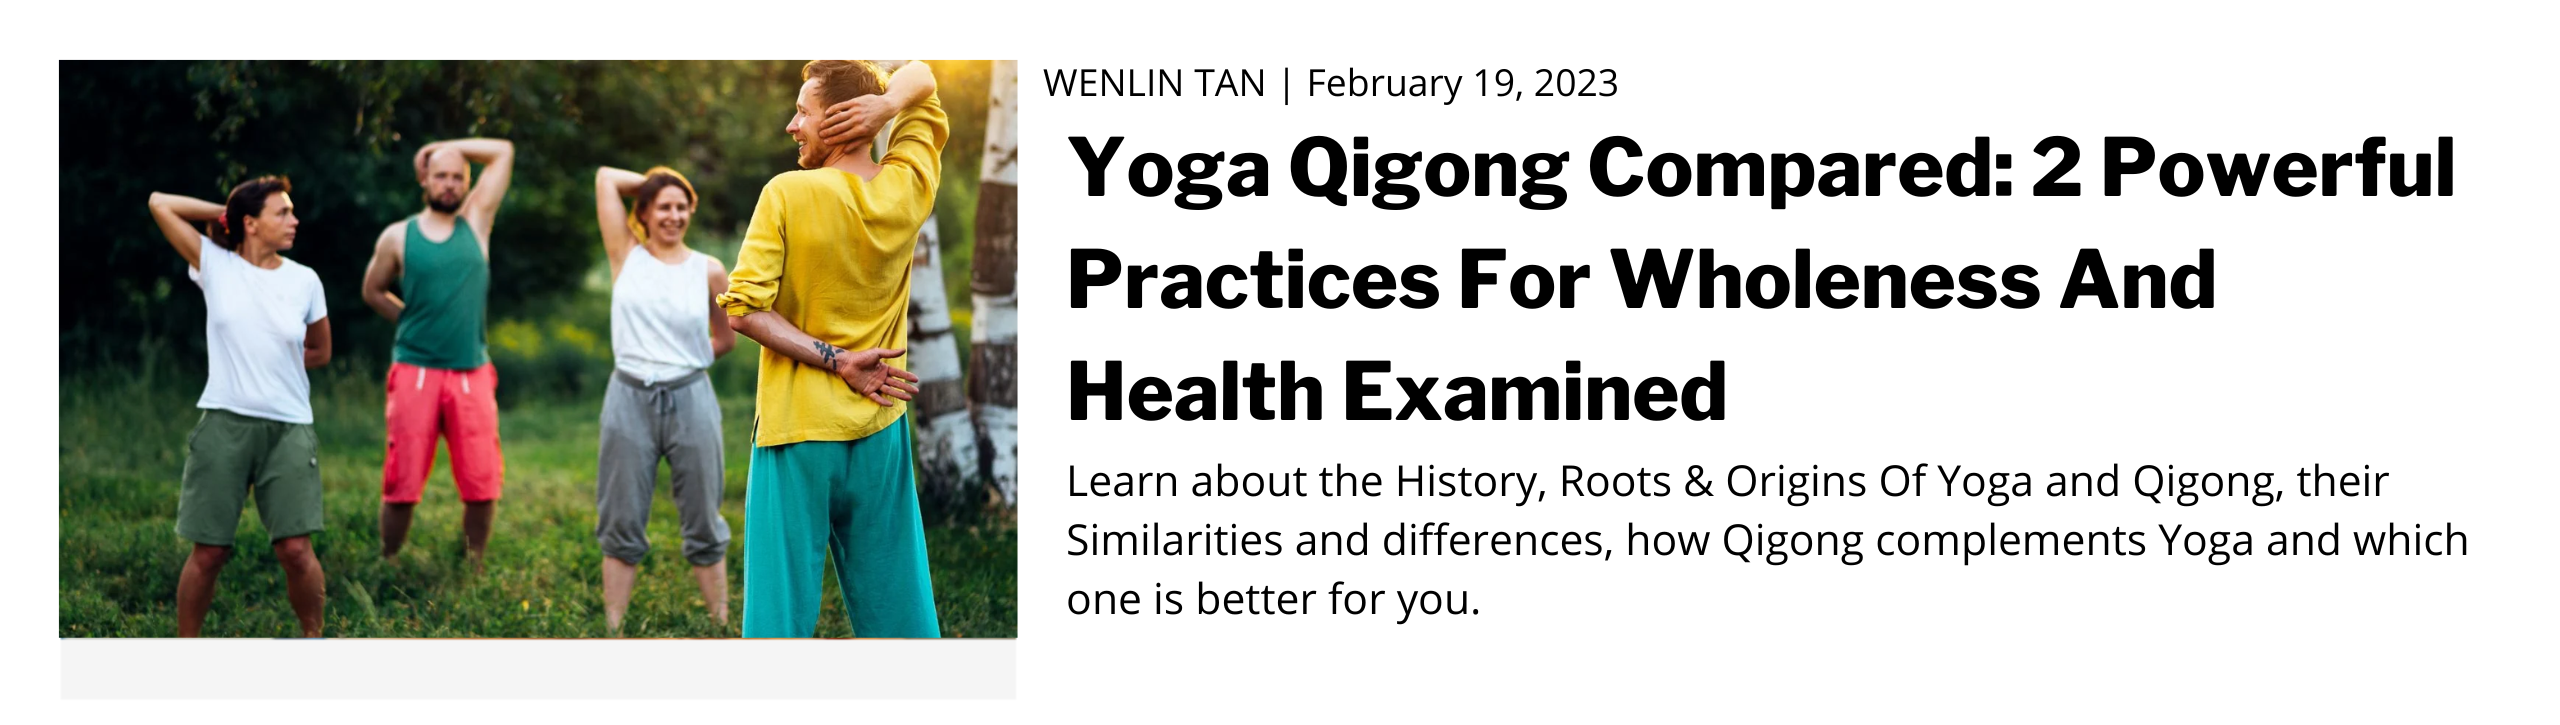 Yoga Qigong compared